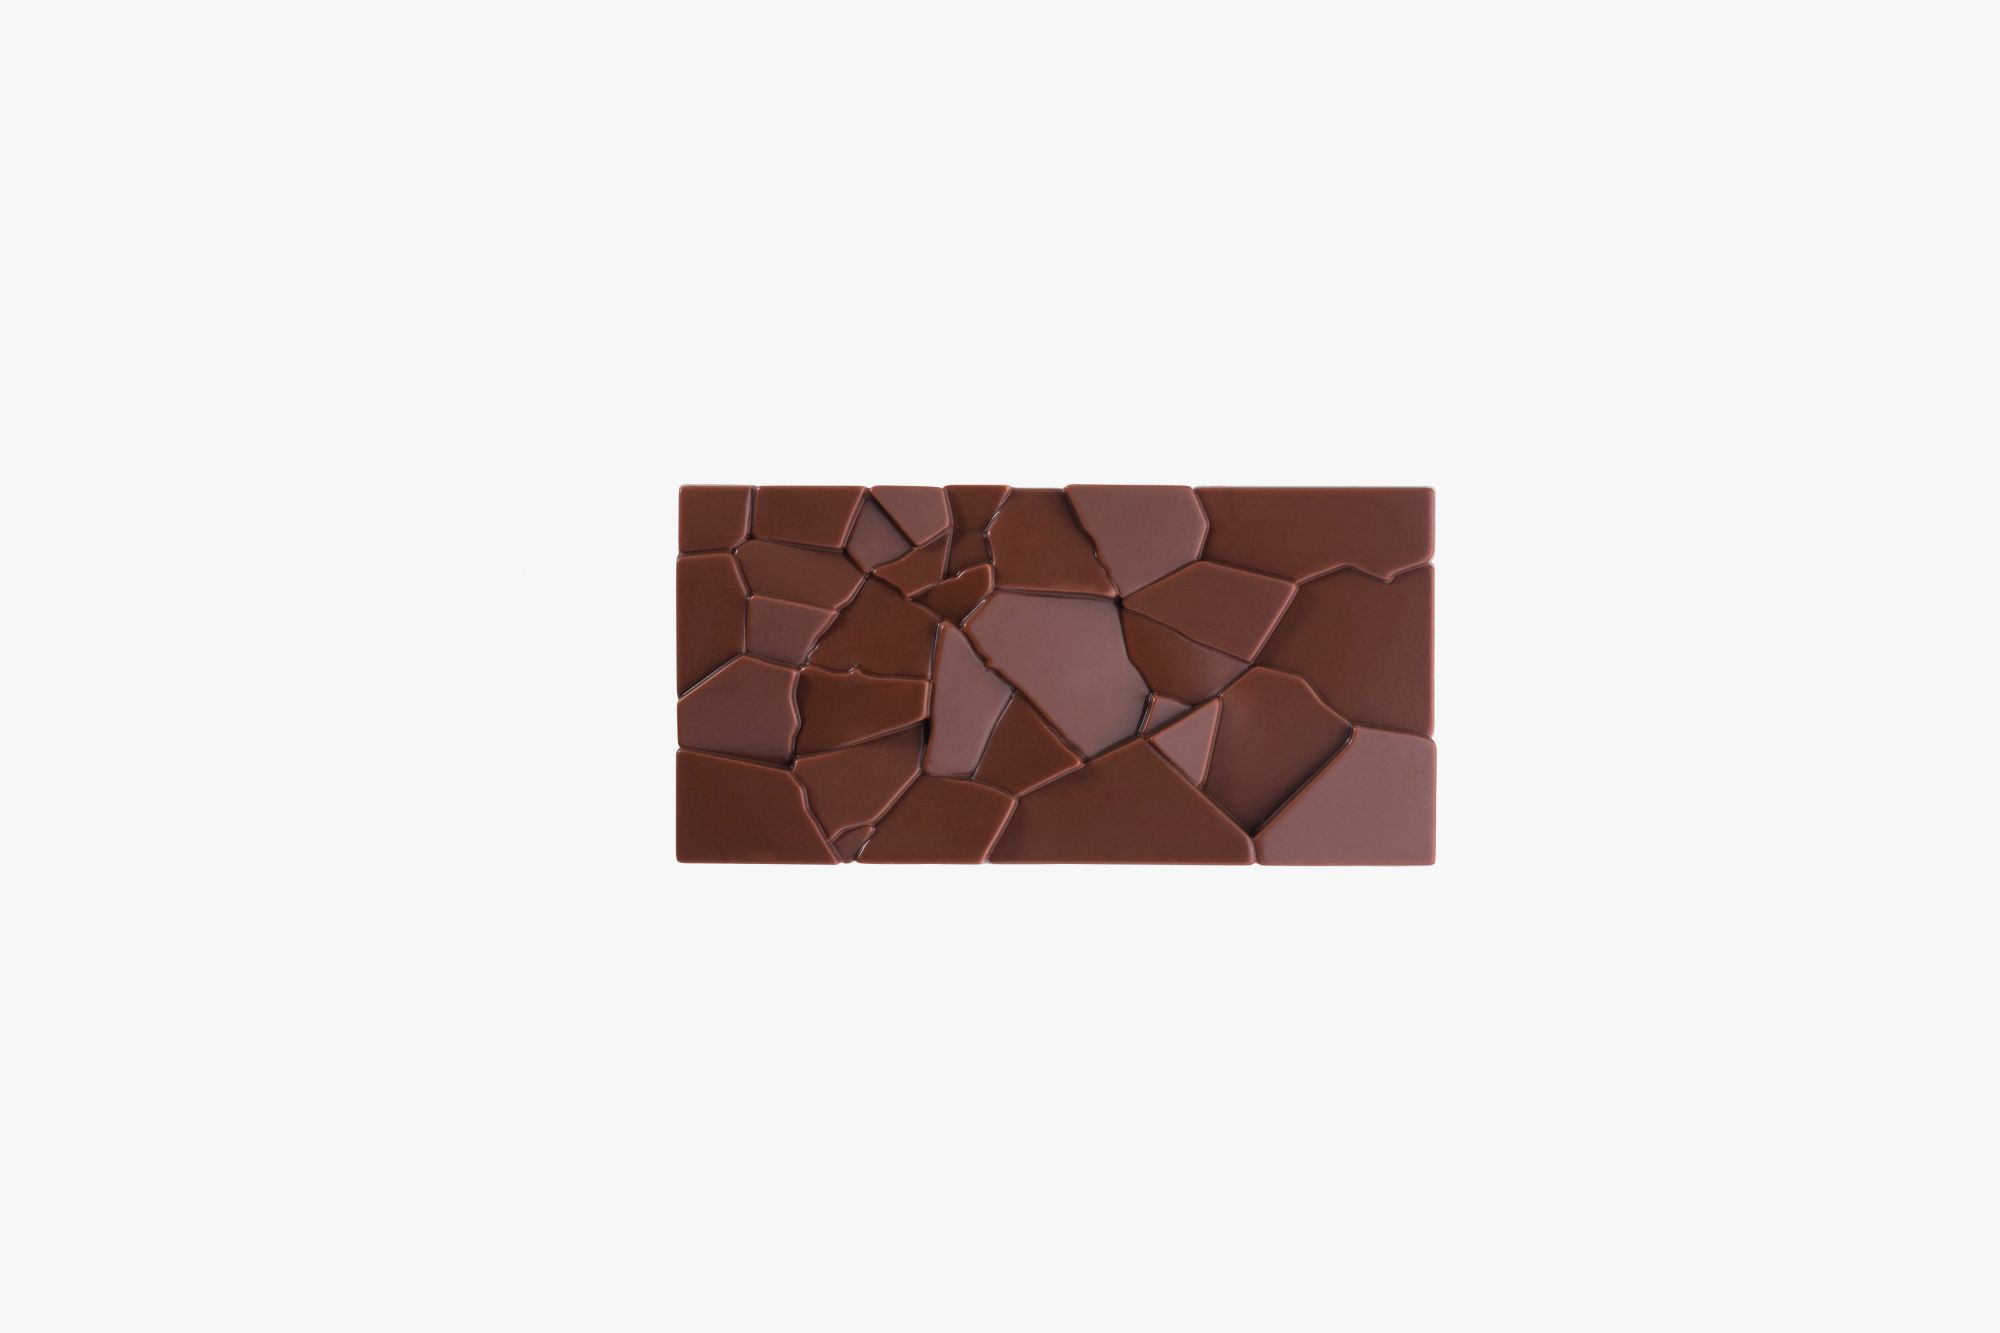 Forma policarbonat Choco Bar CRUSH Fiorani 275x175 mm - 3 cavitati - mm 155x77x10 h, vol. ~ 100 g